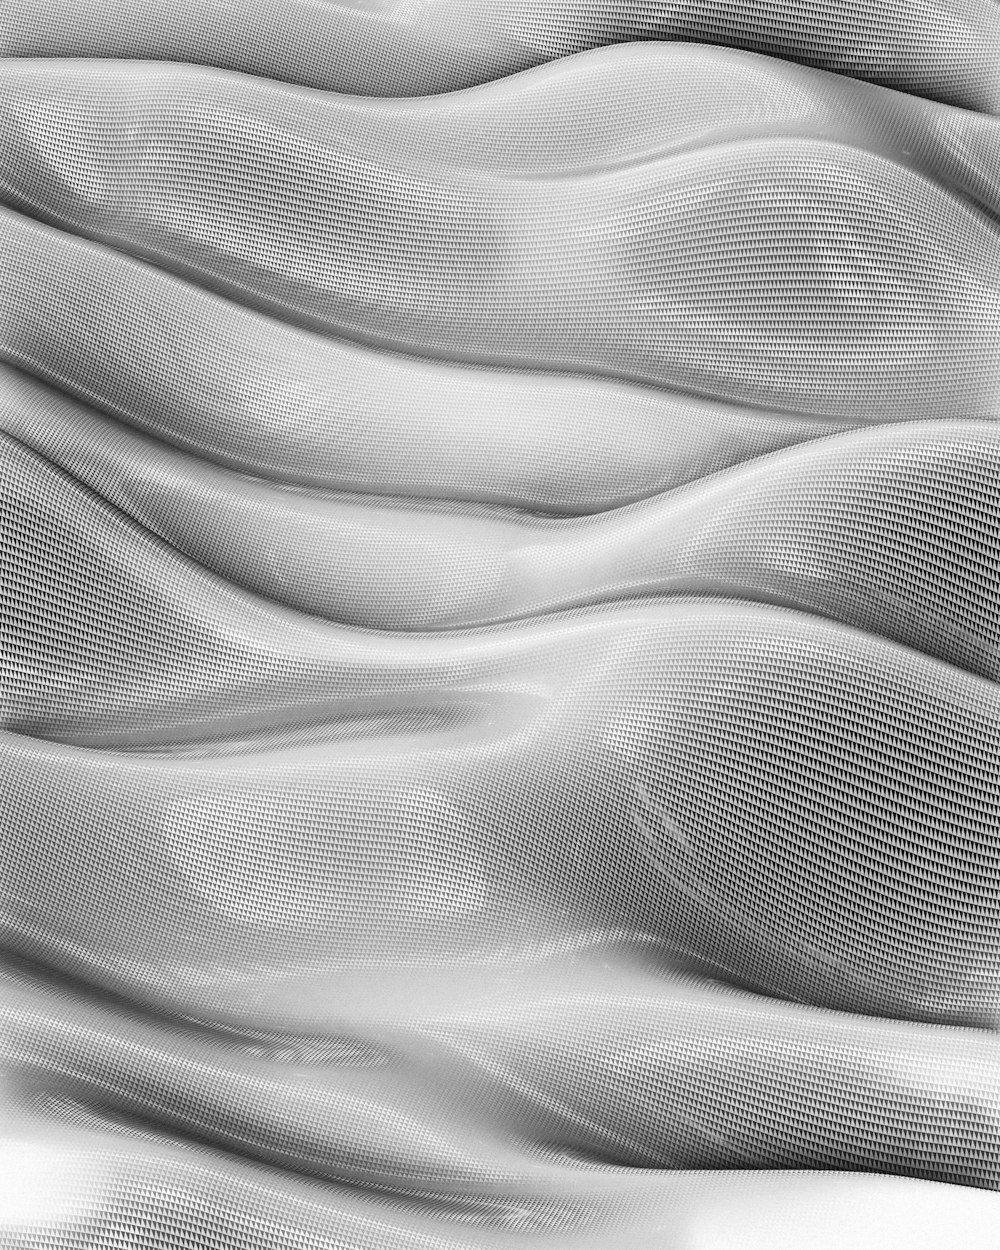 Une photo en noir et blanc d’une surface ondulée